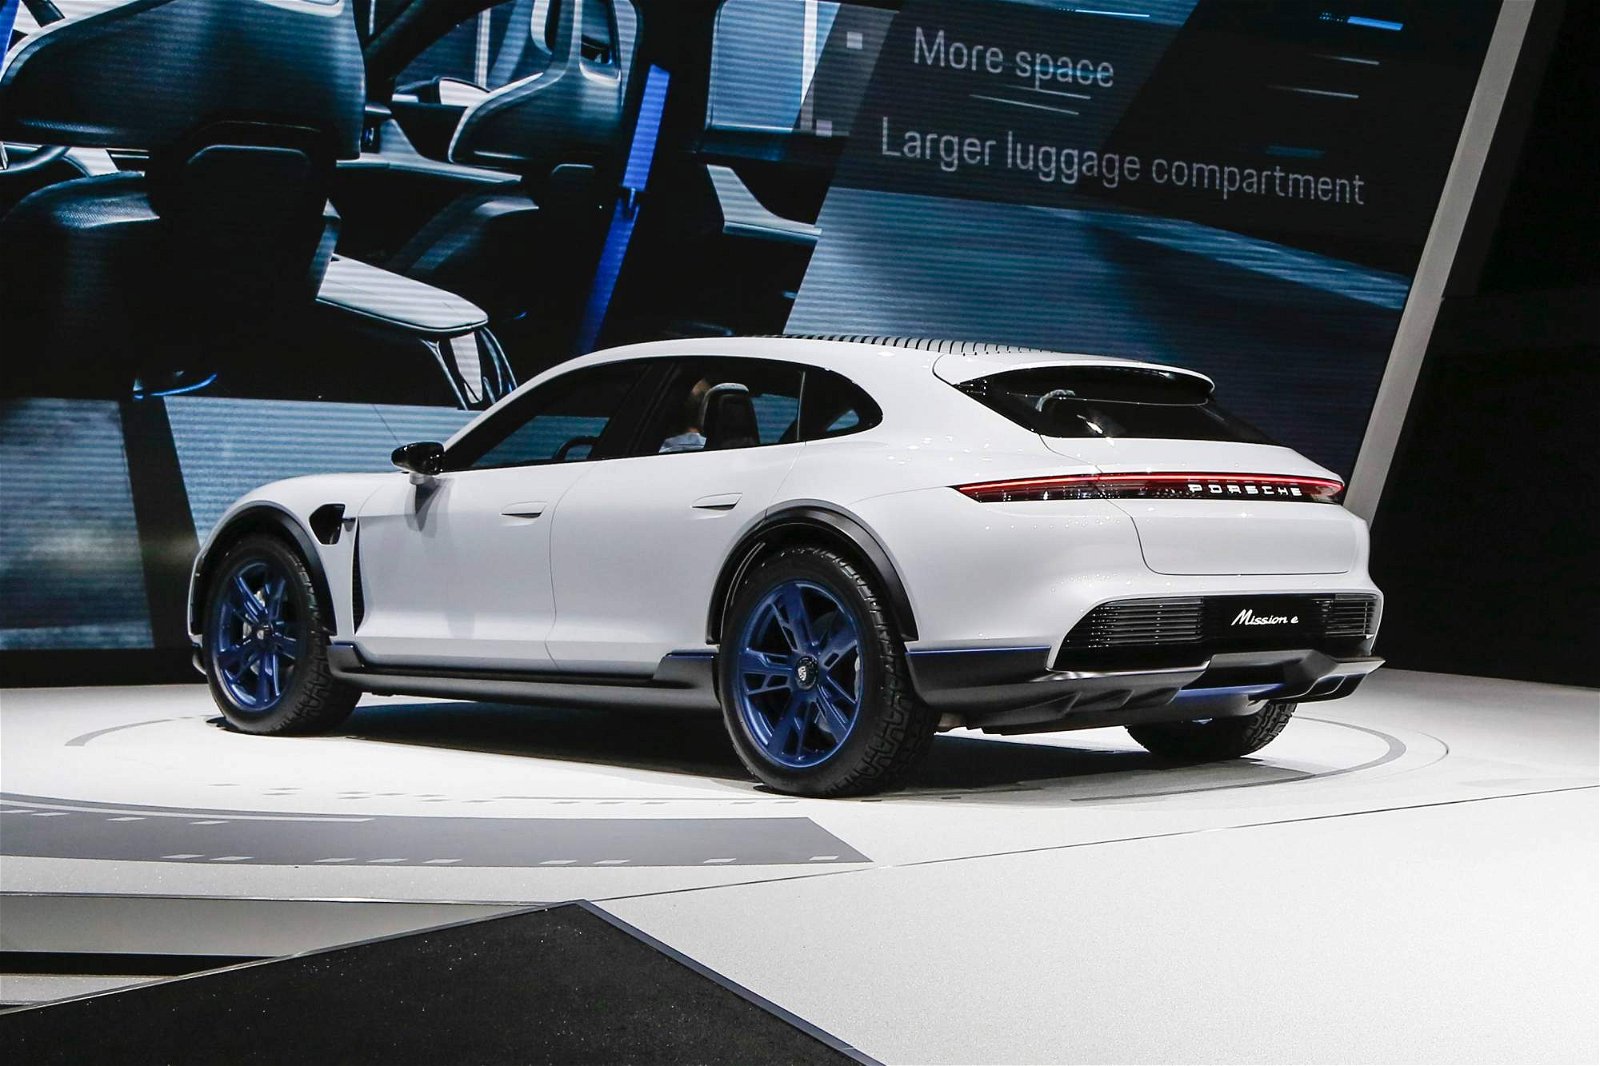 Porsche-Mission-E-Cross-Turismo-Concept-at-Geneva-Motor-Show-2